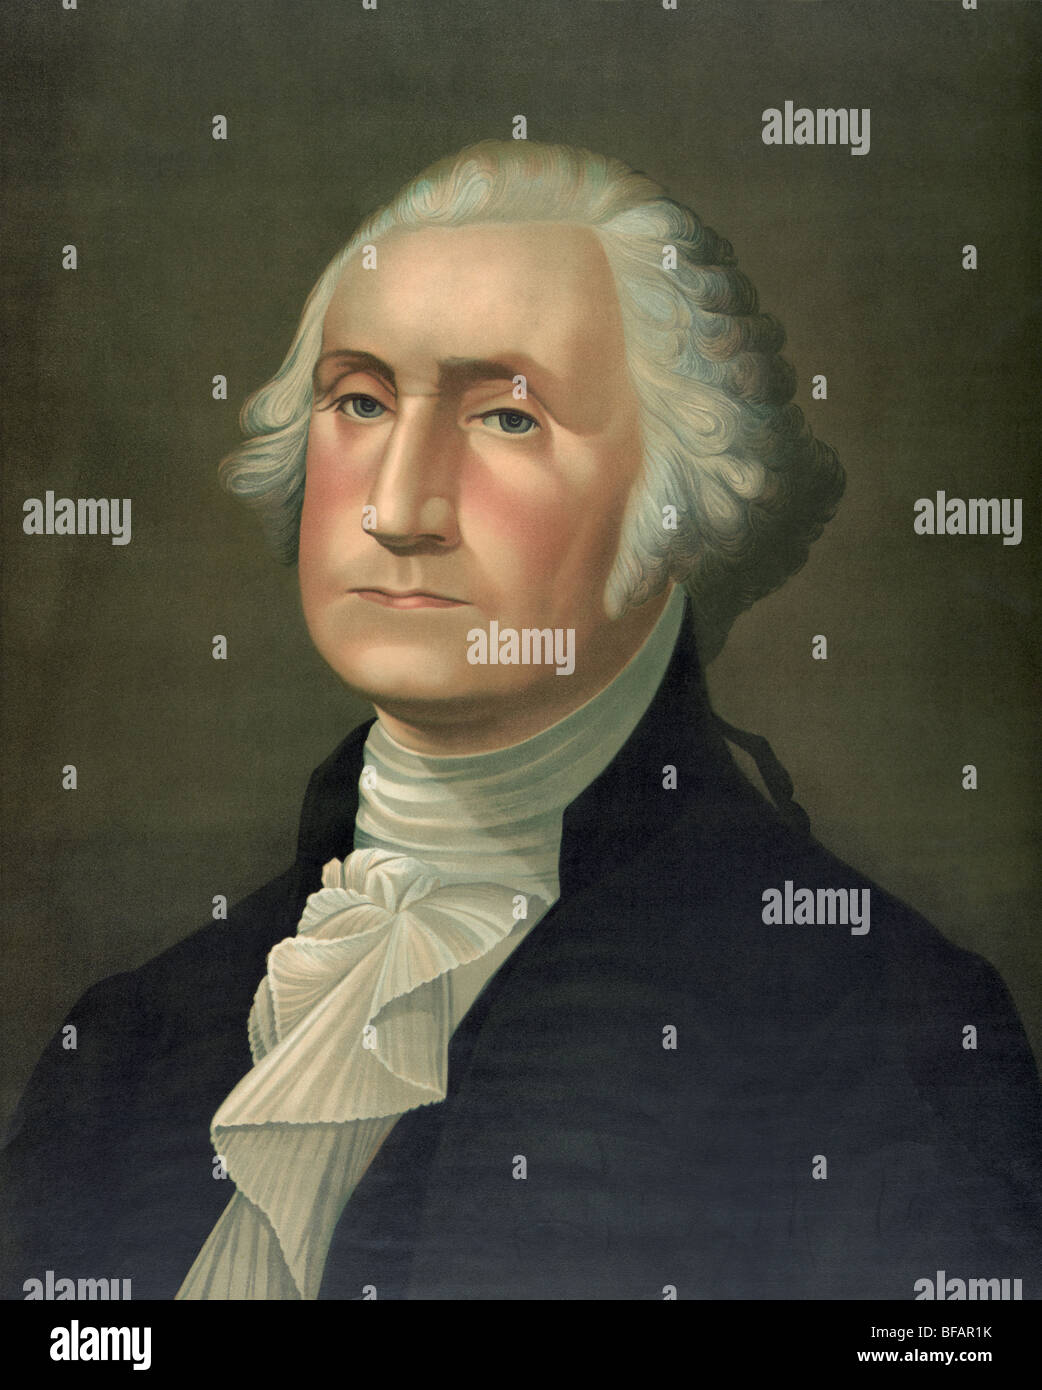 Ritratto c1896 di George Washington - Washington (1732 - 1799) fu il primo Presidente degli Stati Uniti (1789 - 1797). Foto Stock